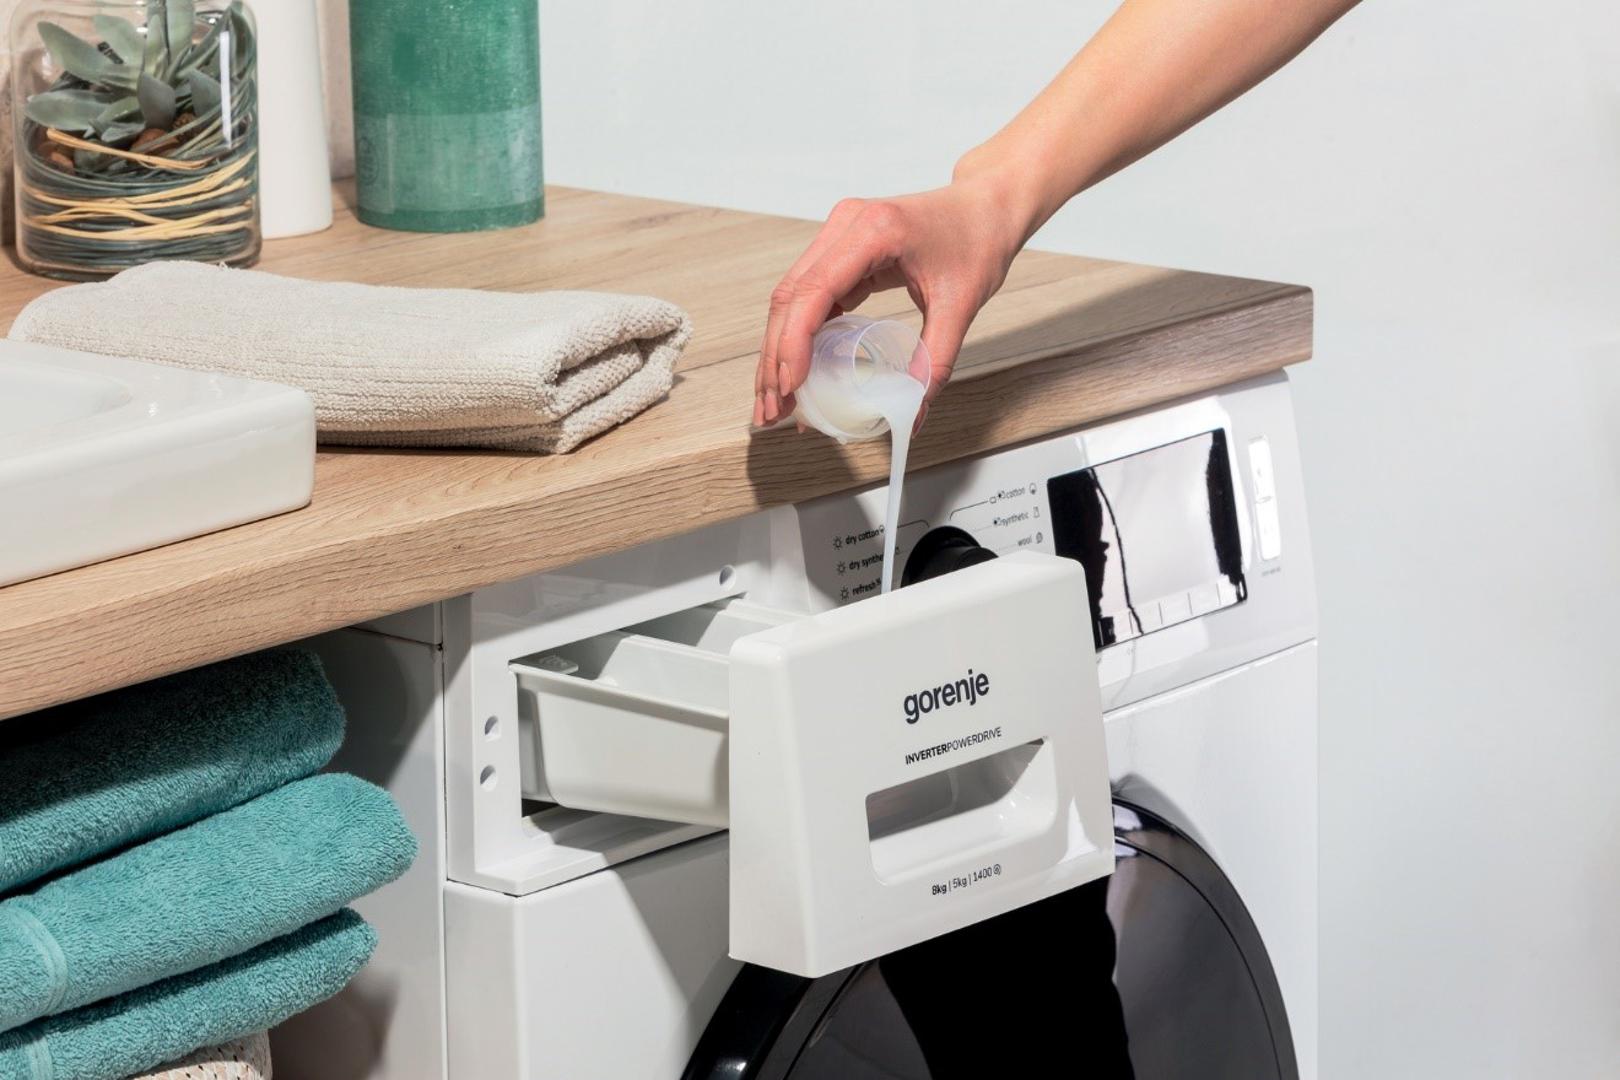 Moderne perilice rublja omogućavaju pranje na nižim temperaturama, koje svejedno uklanja većinu bakterija s odjeće, ali i nečistoća iz same perilice